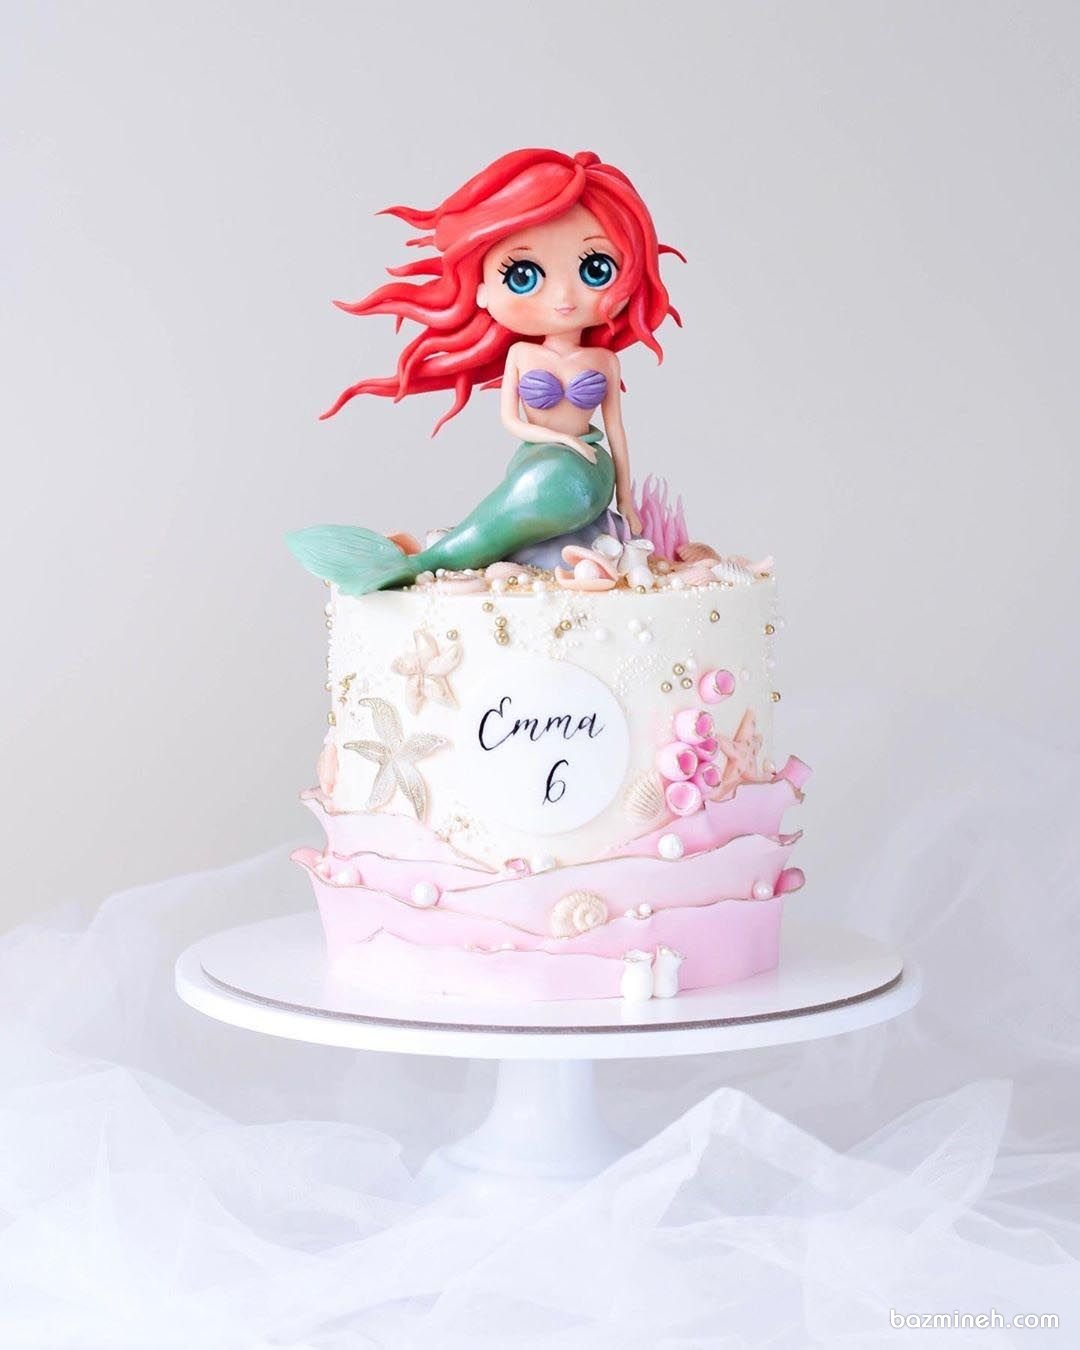 کیک رویایی جشن تولد دخترونه با تم پری دریایی